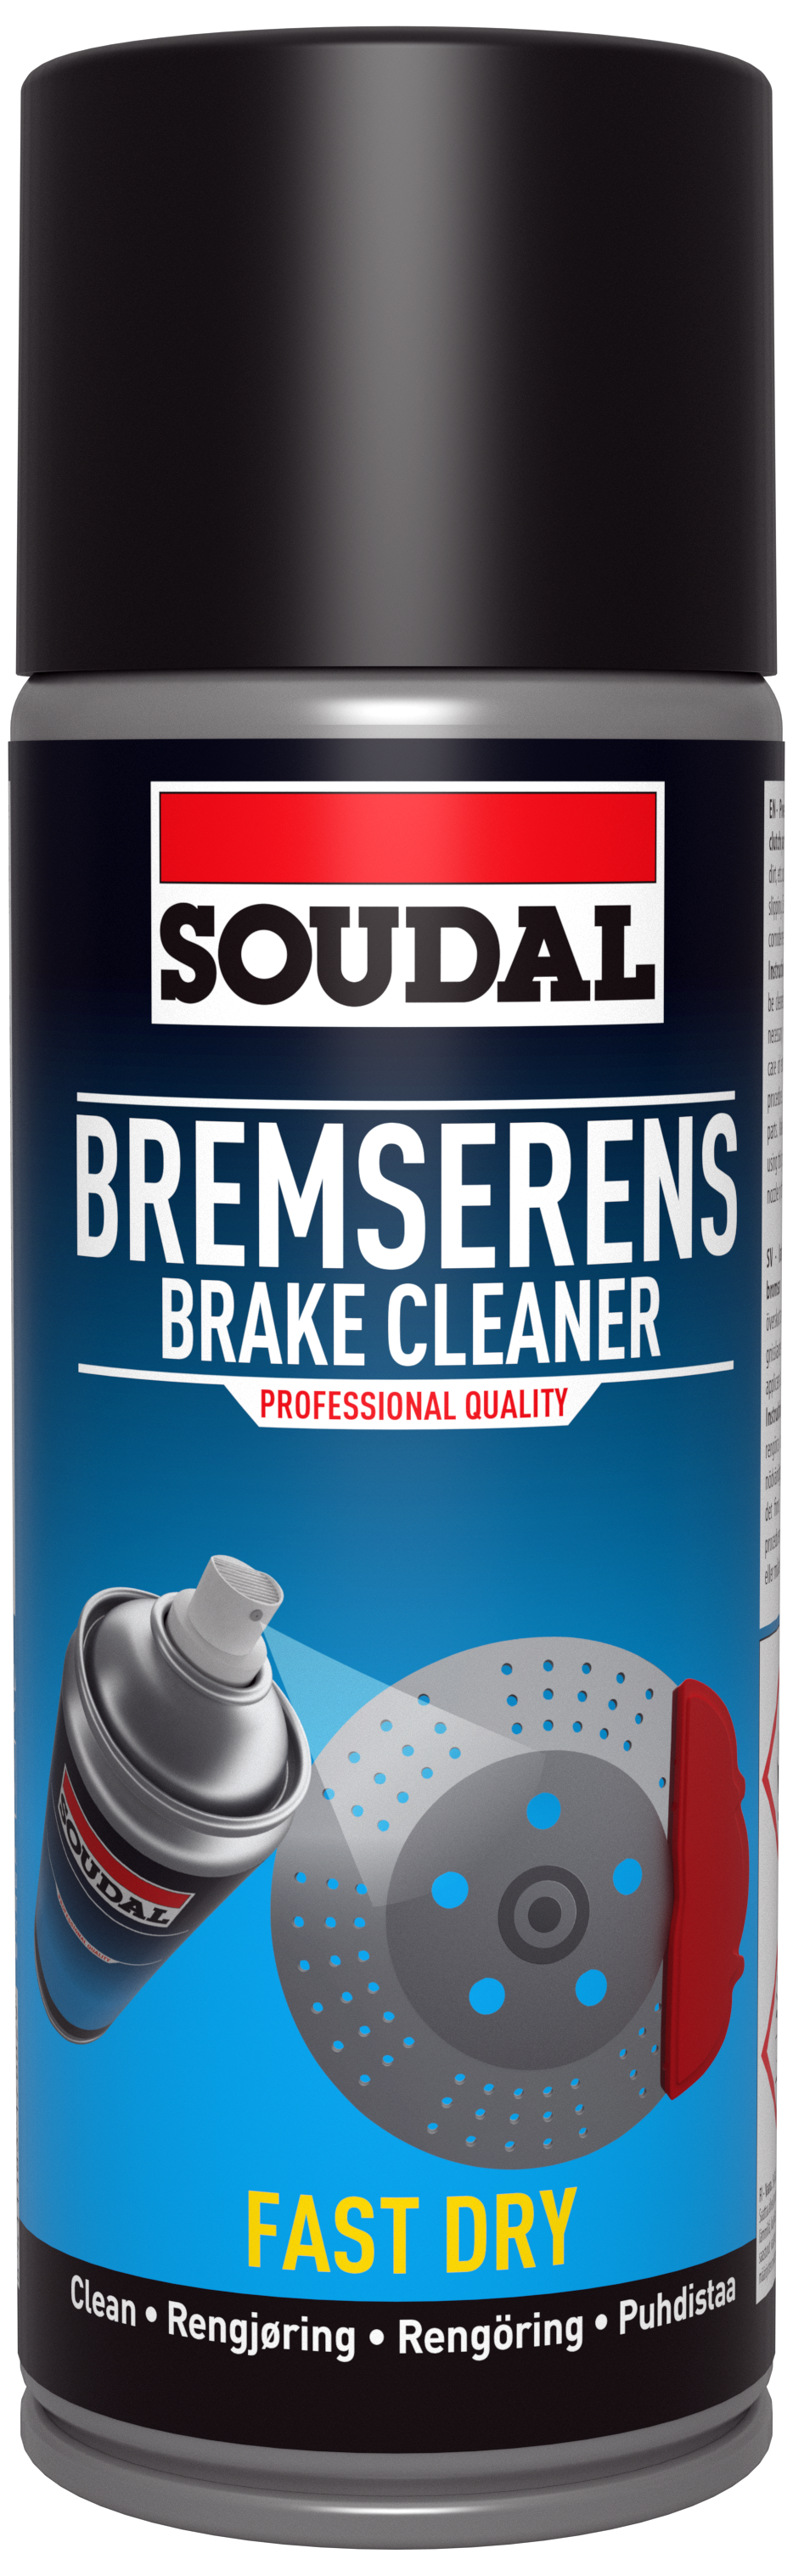 Soudal Bremserens spray 400ml 394837